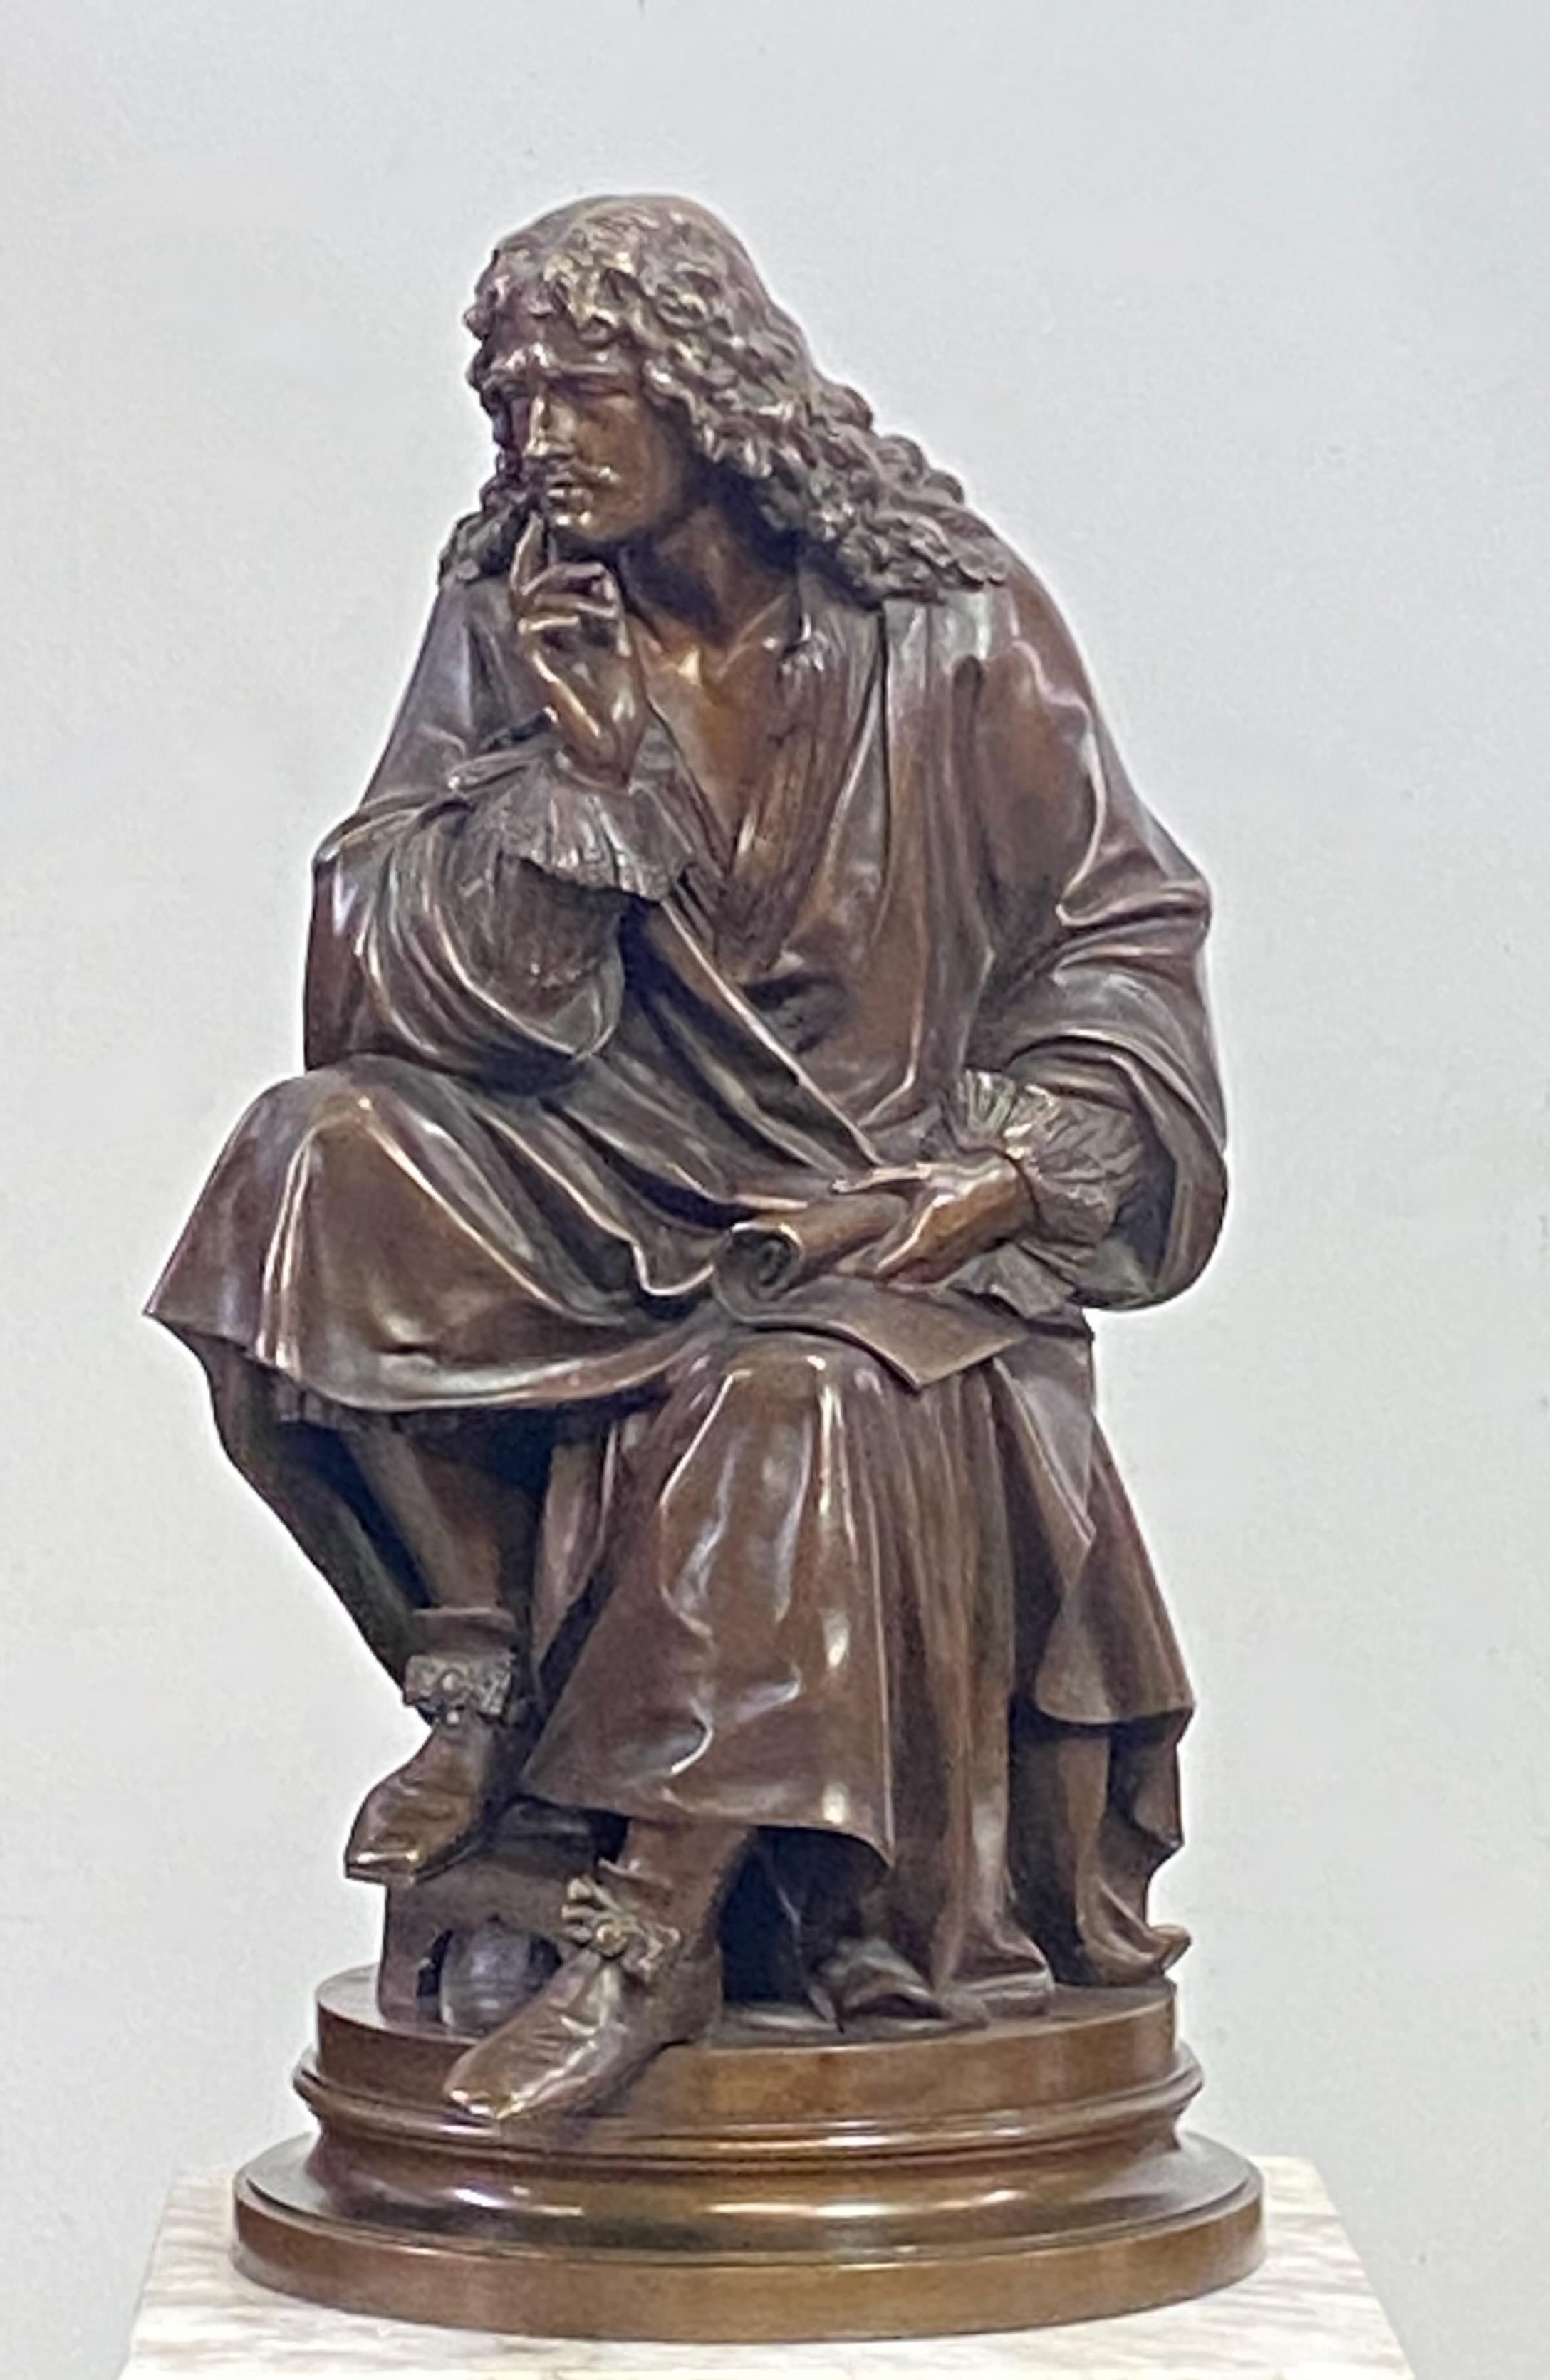 Très belle sculpture / modèle en bronze de Molière assis par Albert-Ernest Carrier-Belleuse (1824-1887). France, vers 1870.

Albert-Ernest Carrier-Belleuse était un sculpteur français. Carrier-Belleuse est né le 12 juin 1824 à Anizy-le-Château,